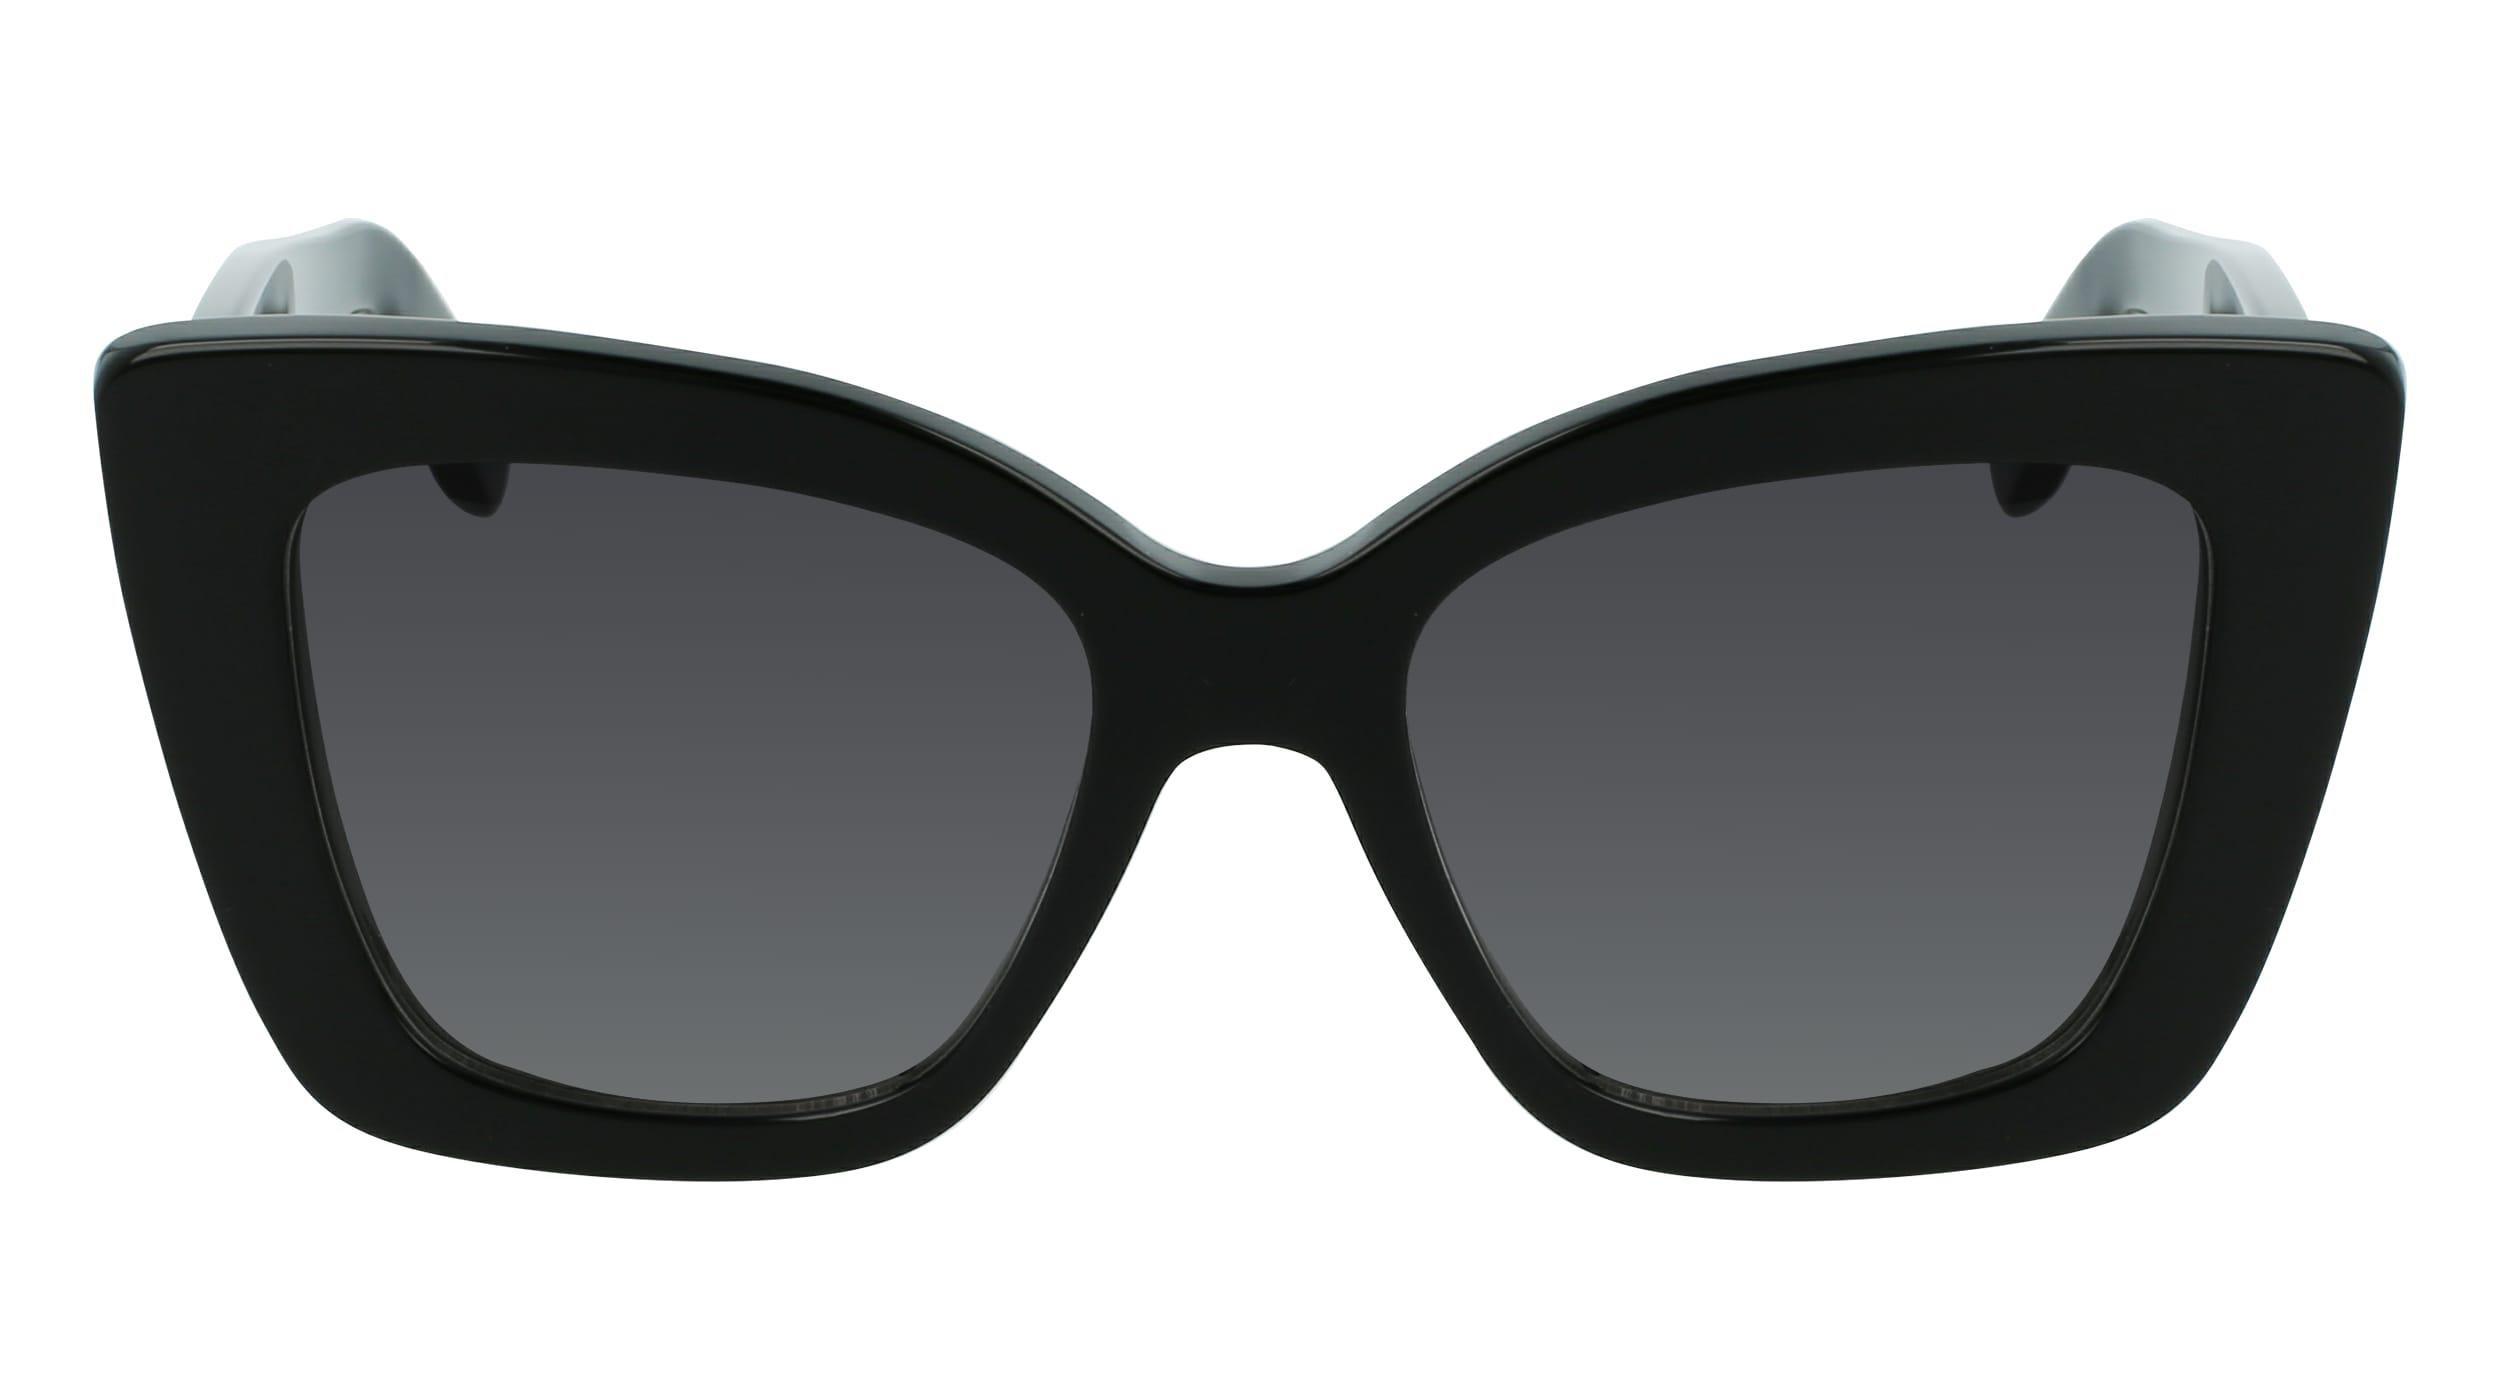 SALVATORE FERRAGAMO - Ferragamo Women Black Butterfly Sunglasses - Sf1023S